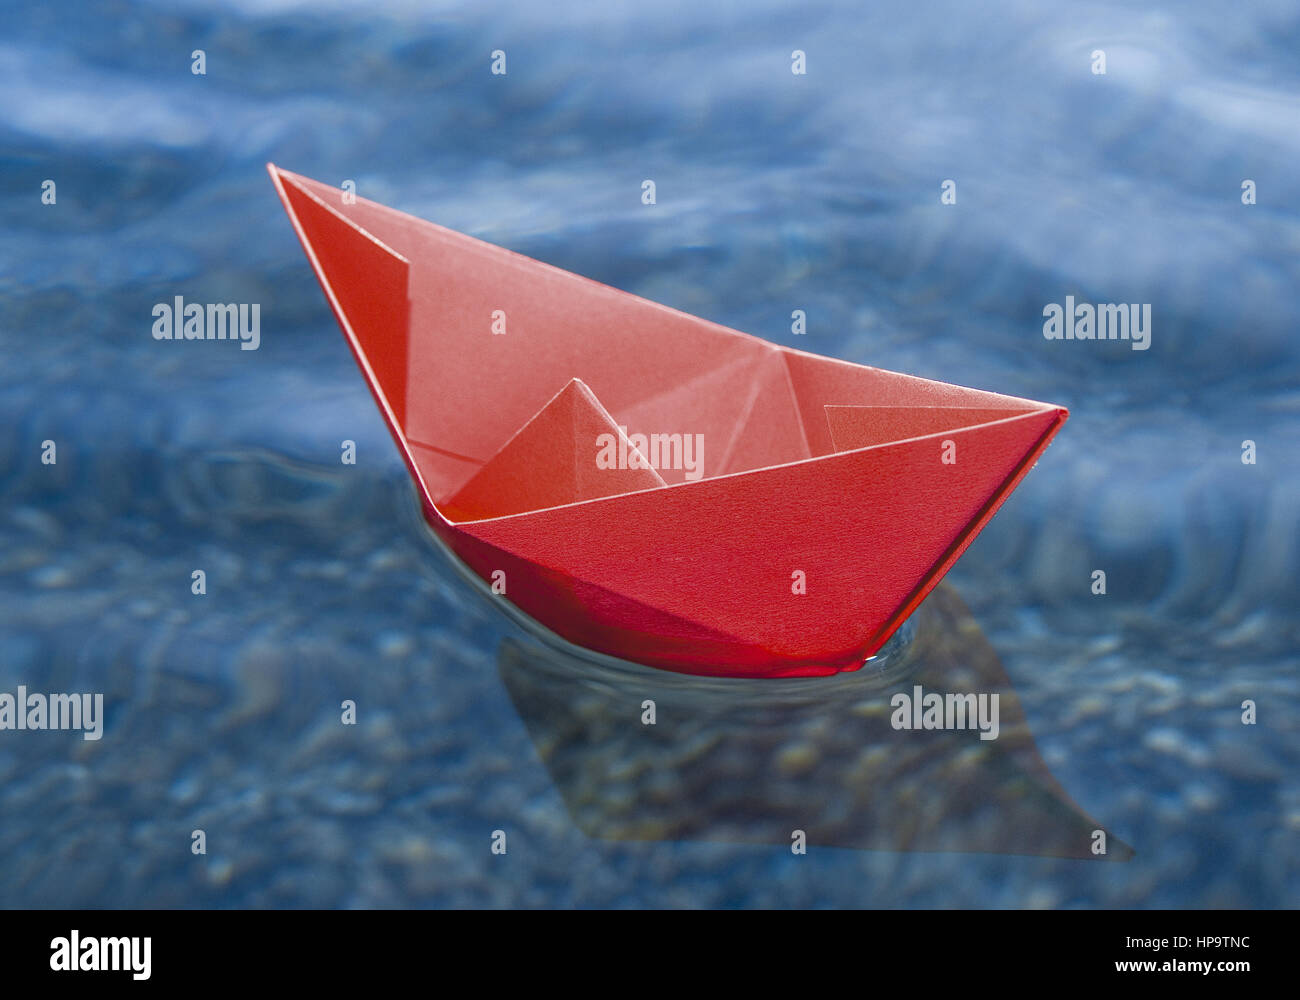 Rotes Papierschiffchen schwimmt auf Wasser Stock Photo